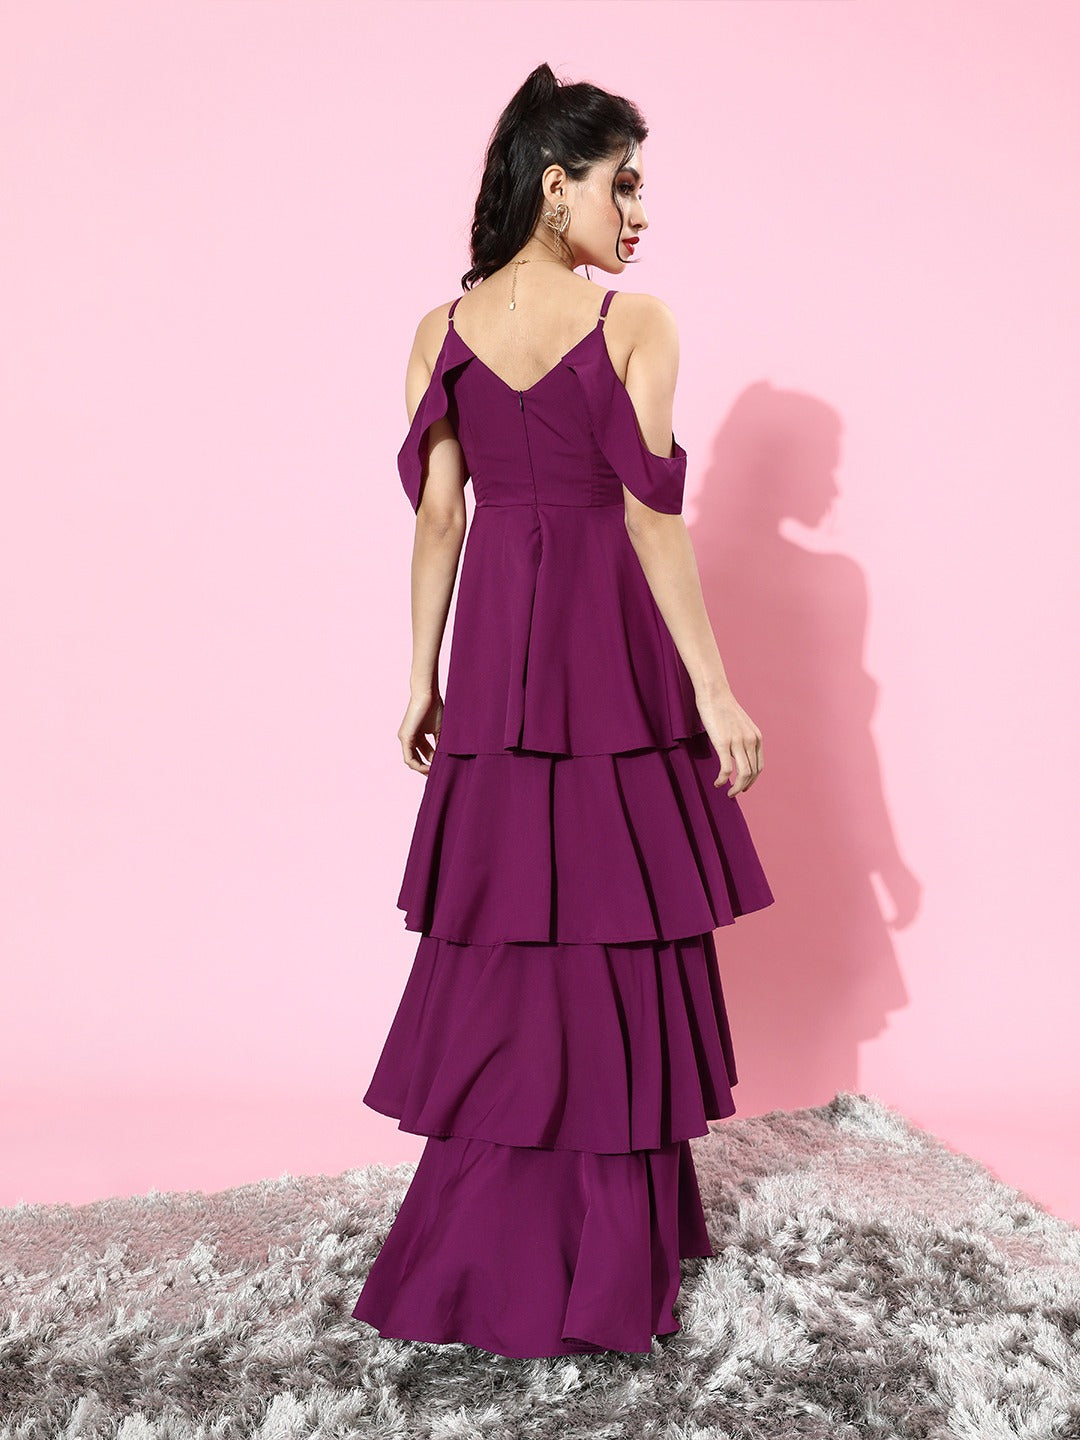 Buy Cover Story Purple Full Length Slip Dress for Women's Online @ Tata CLiQ